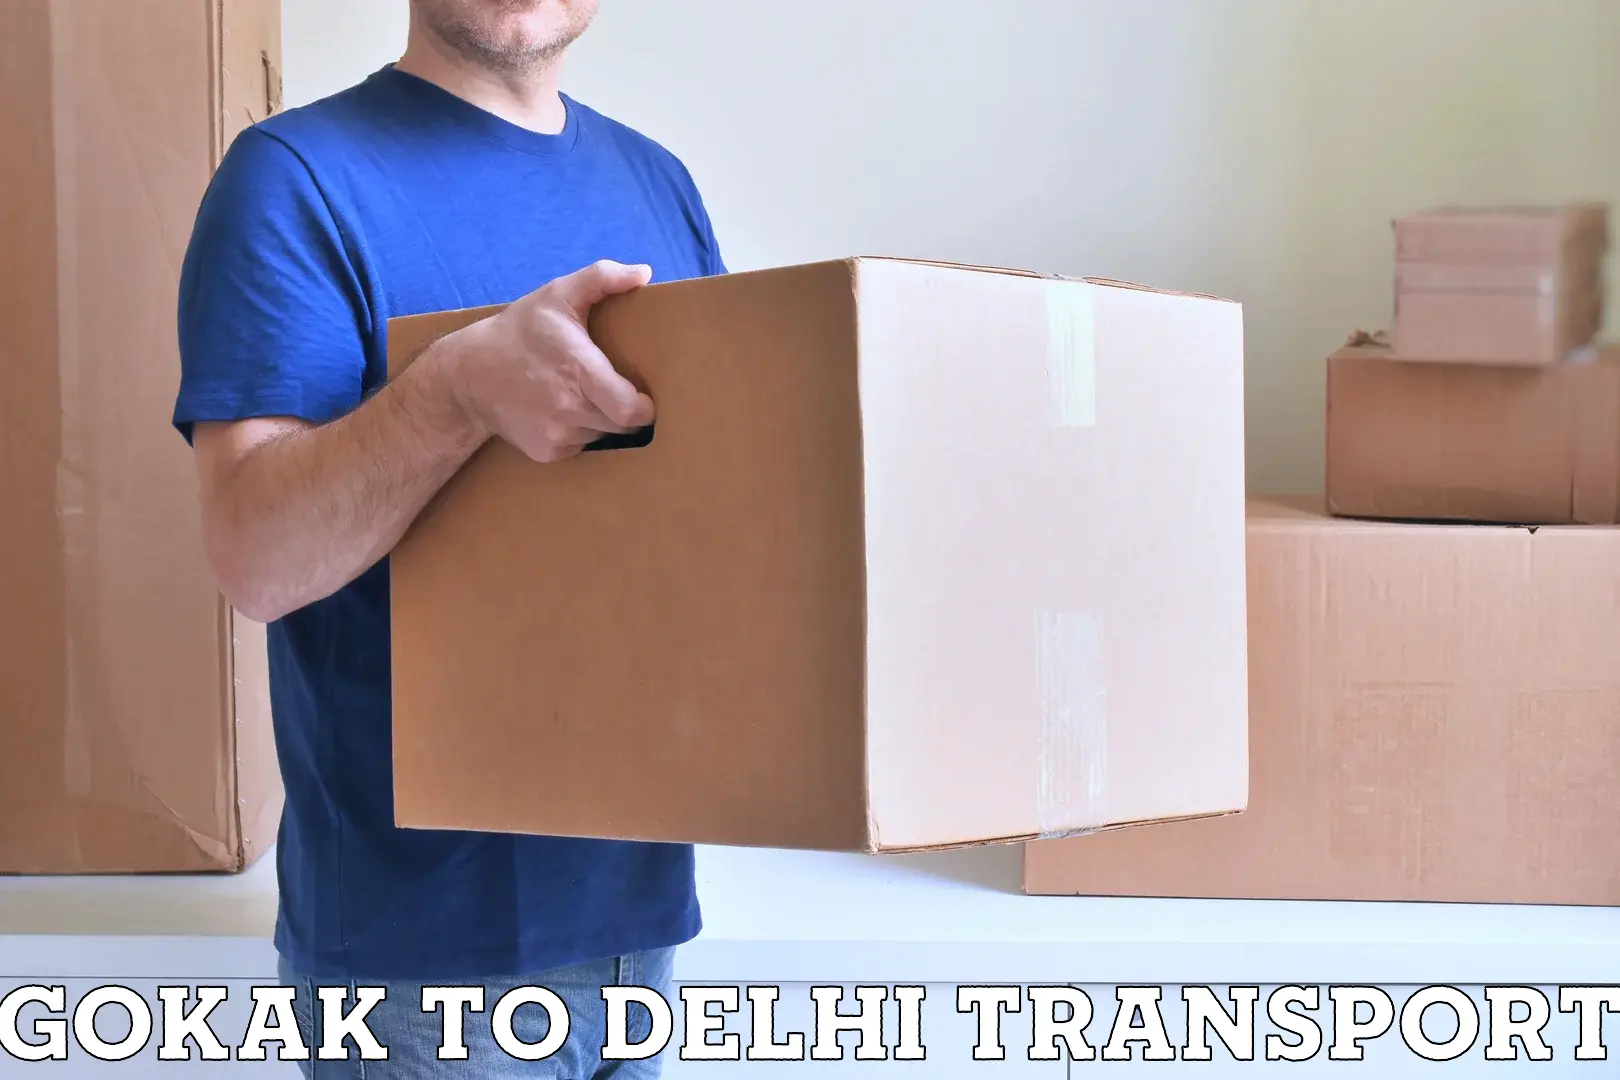 Nearby transport service Gokak to University of Delhi